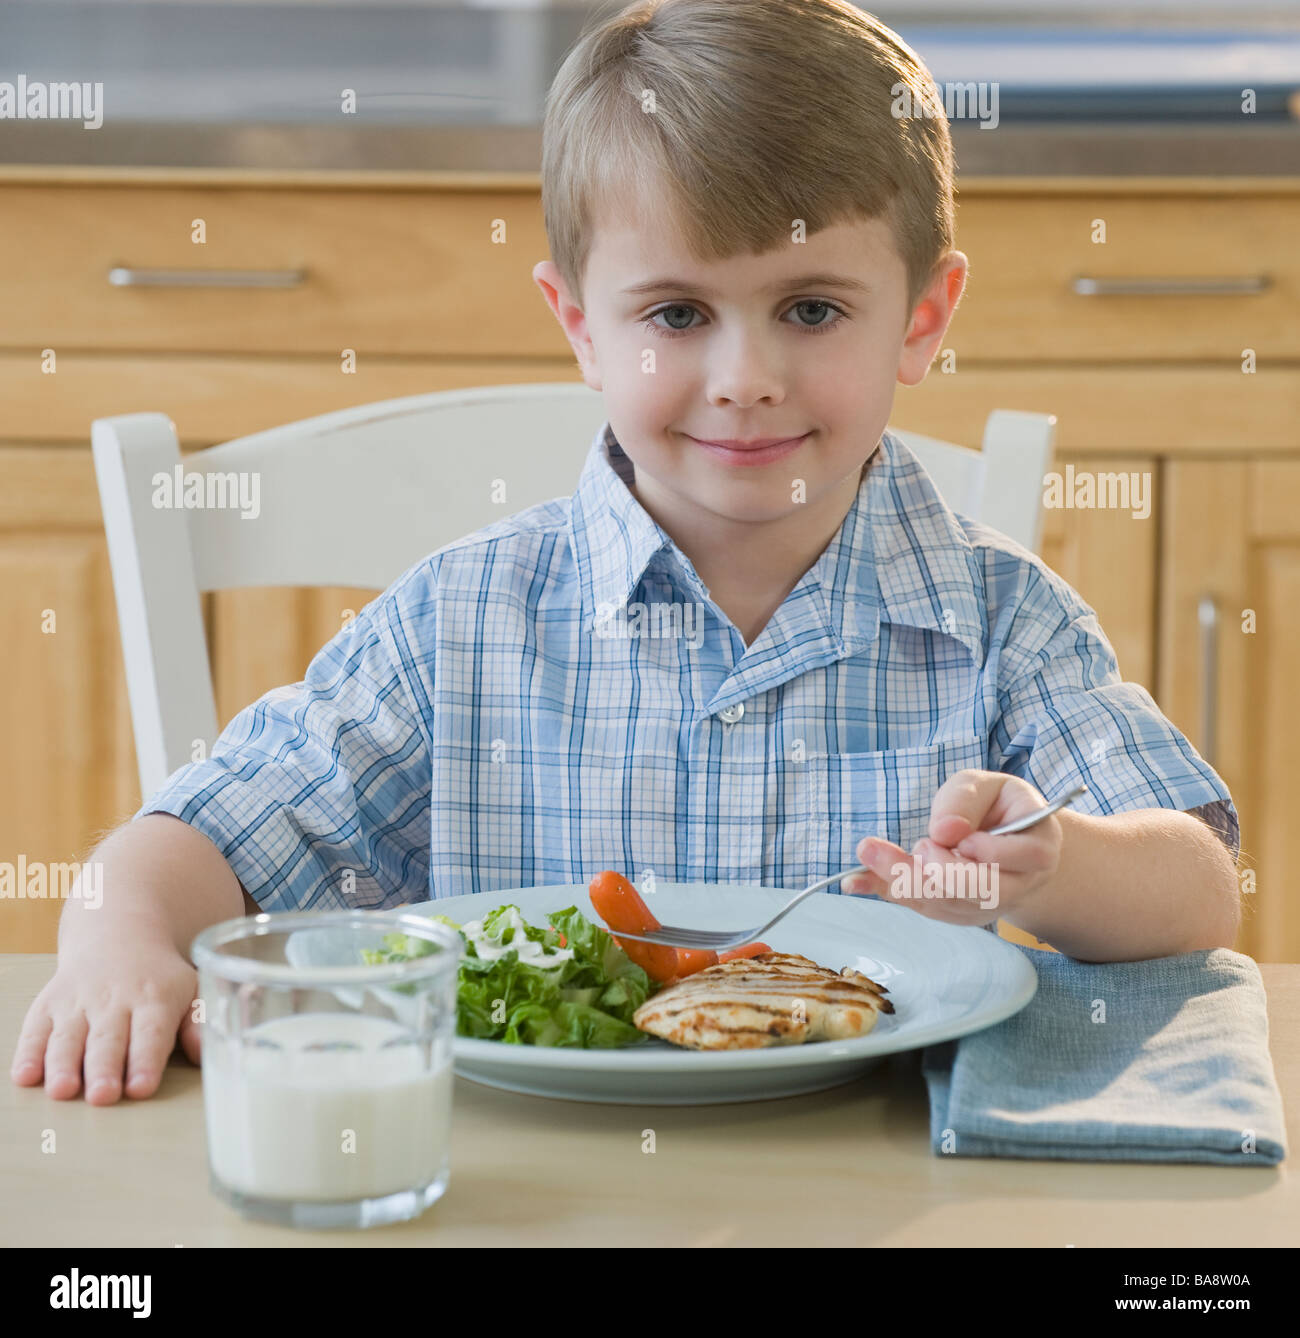 Boy eating dinner Stock Photo